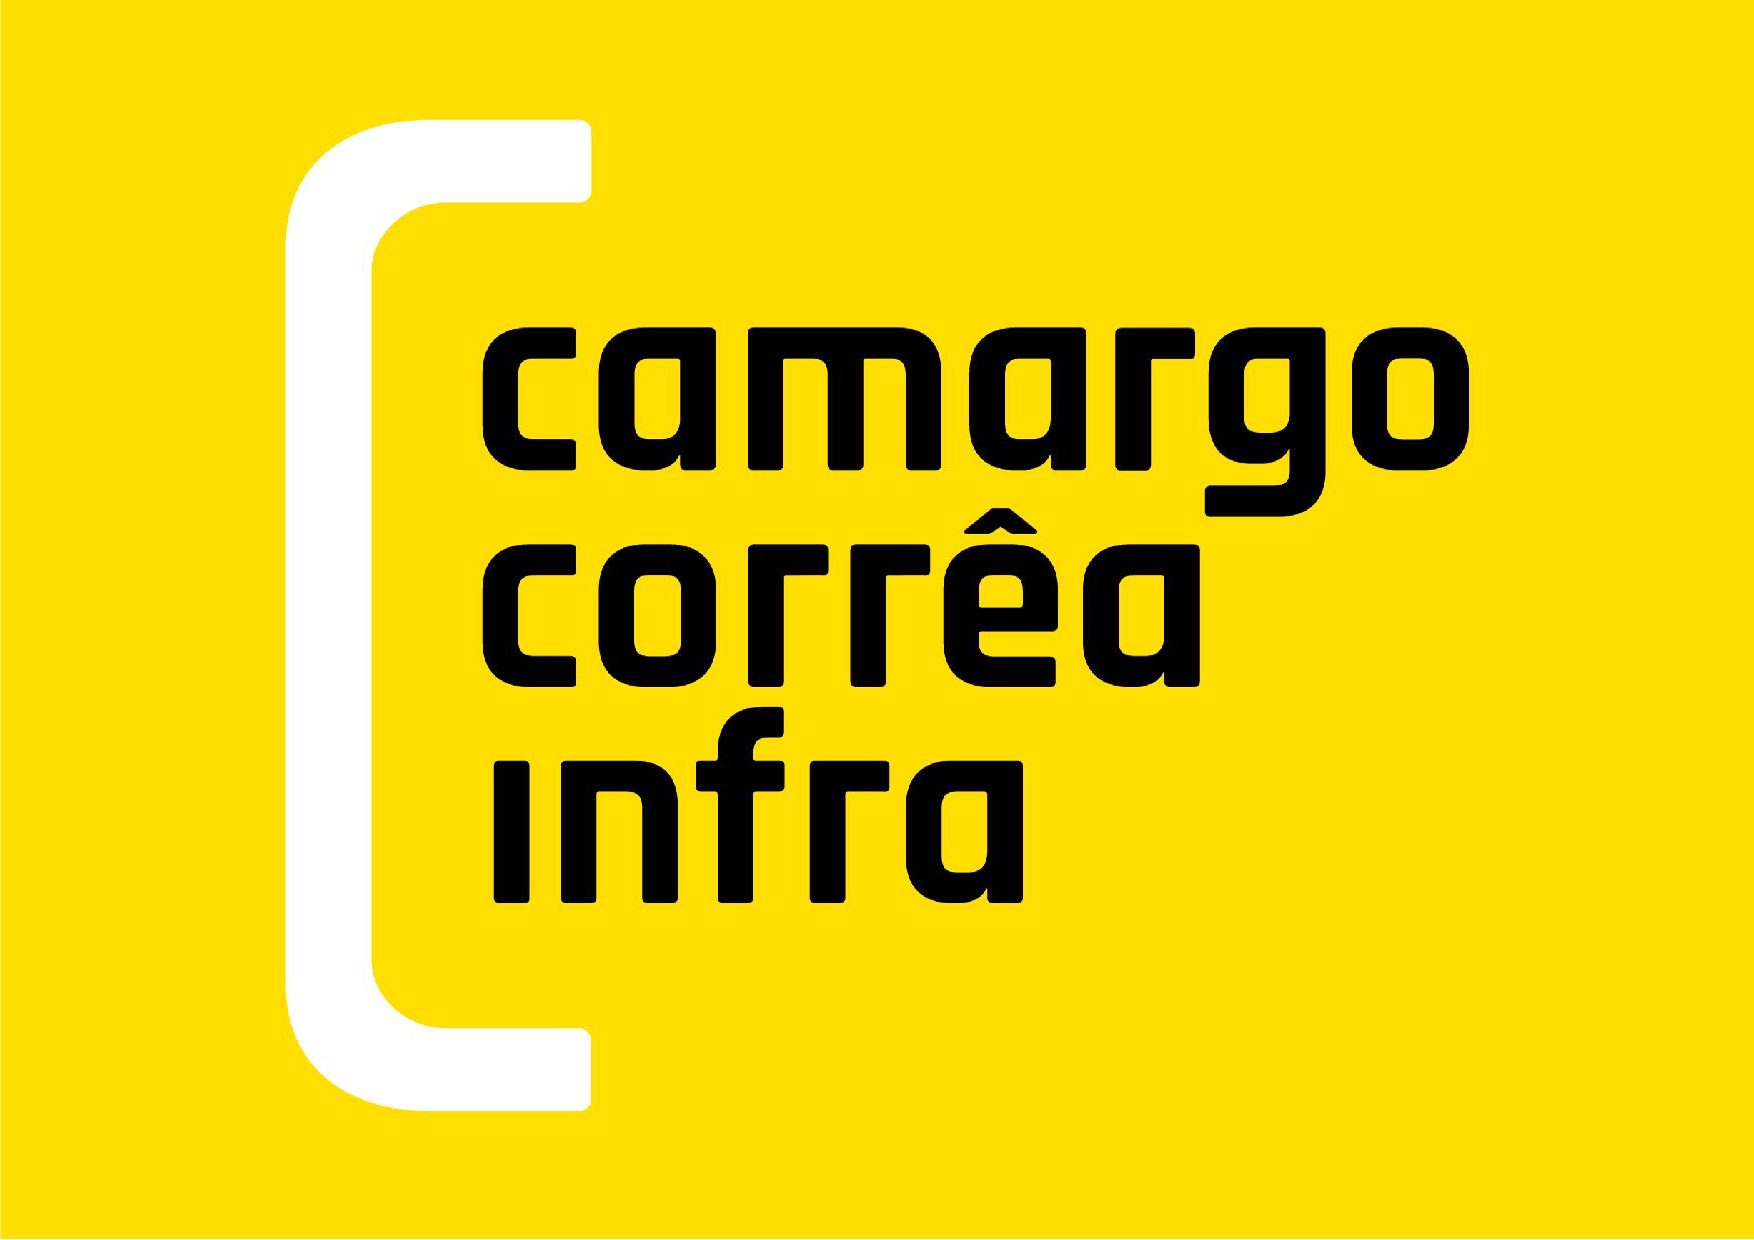 CAMARGO CORREA logo1